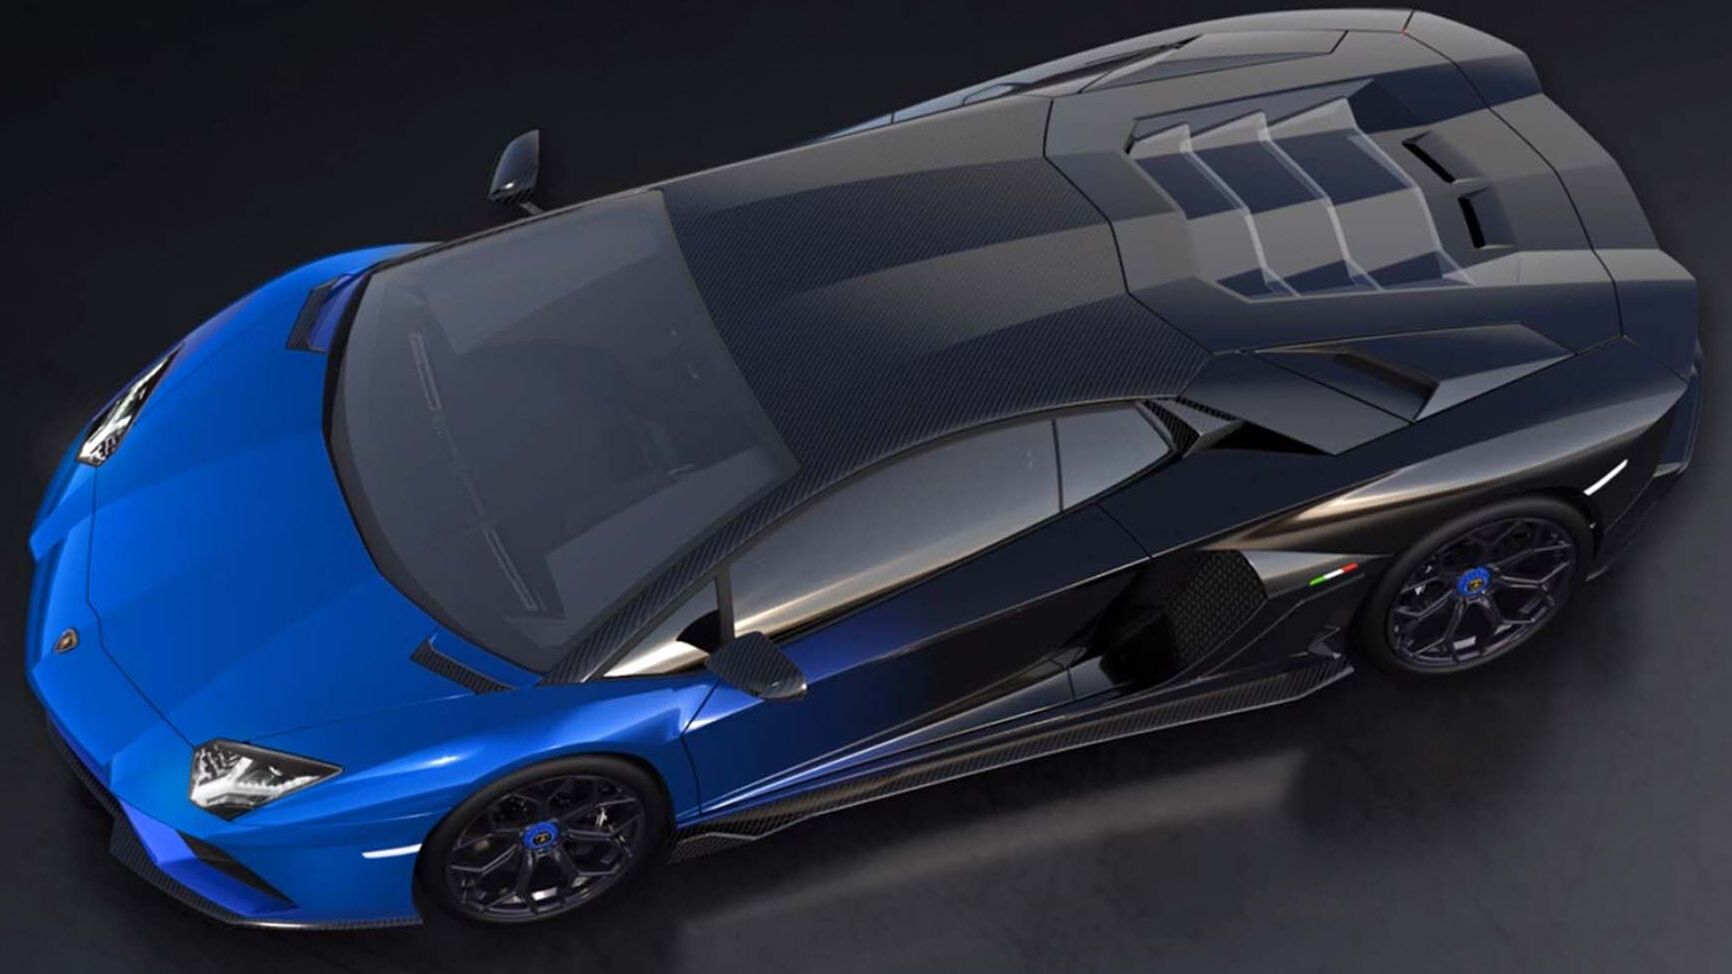 Ekskluzivni Lamborghini Aventador LP 780-4 Ultimae Coupé bit će uparen s NFT 1.1 i na aukciji